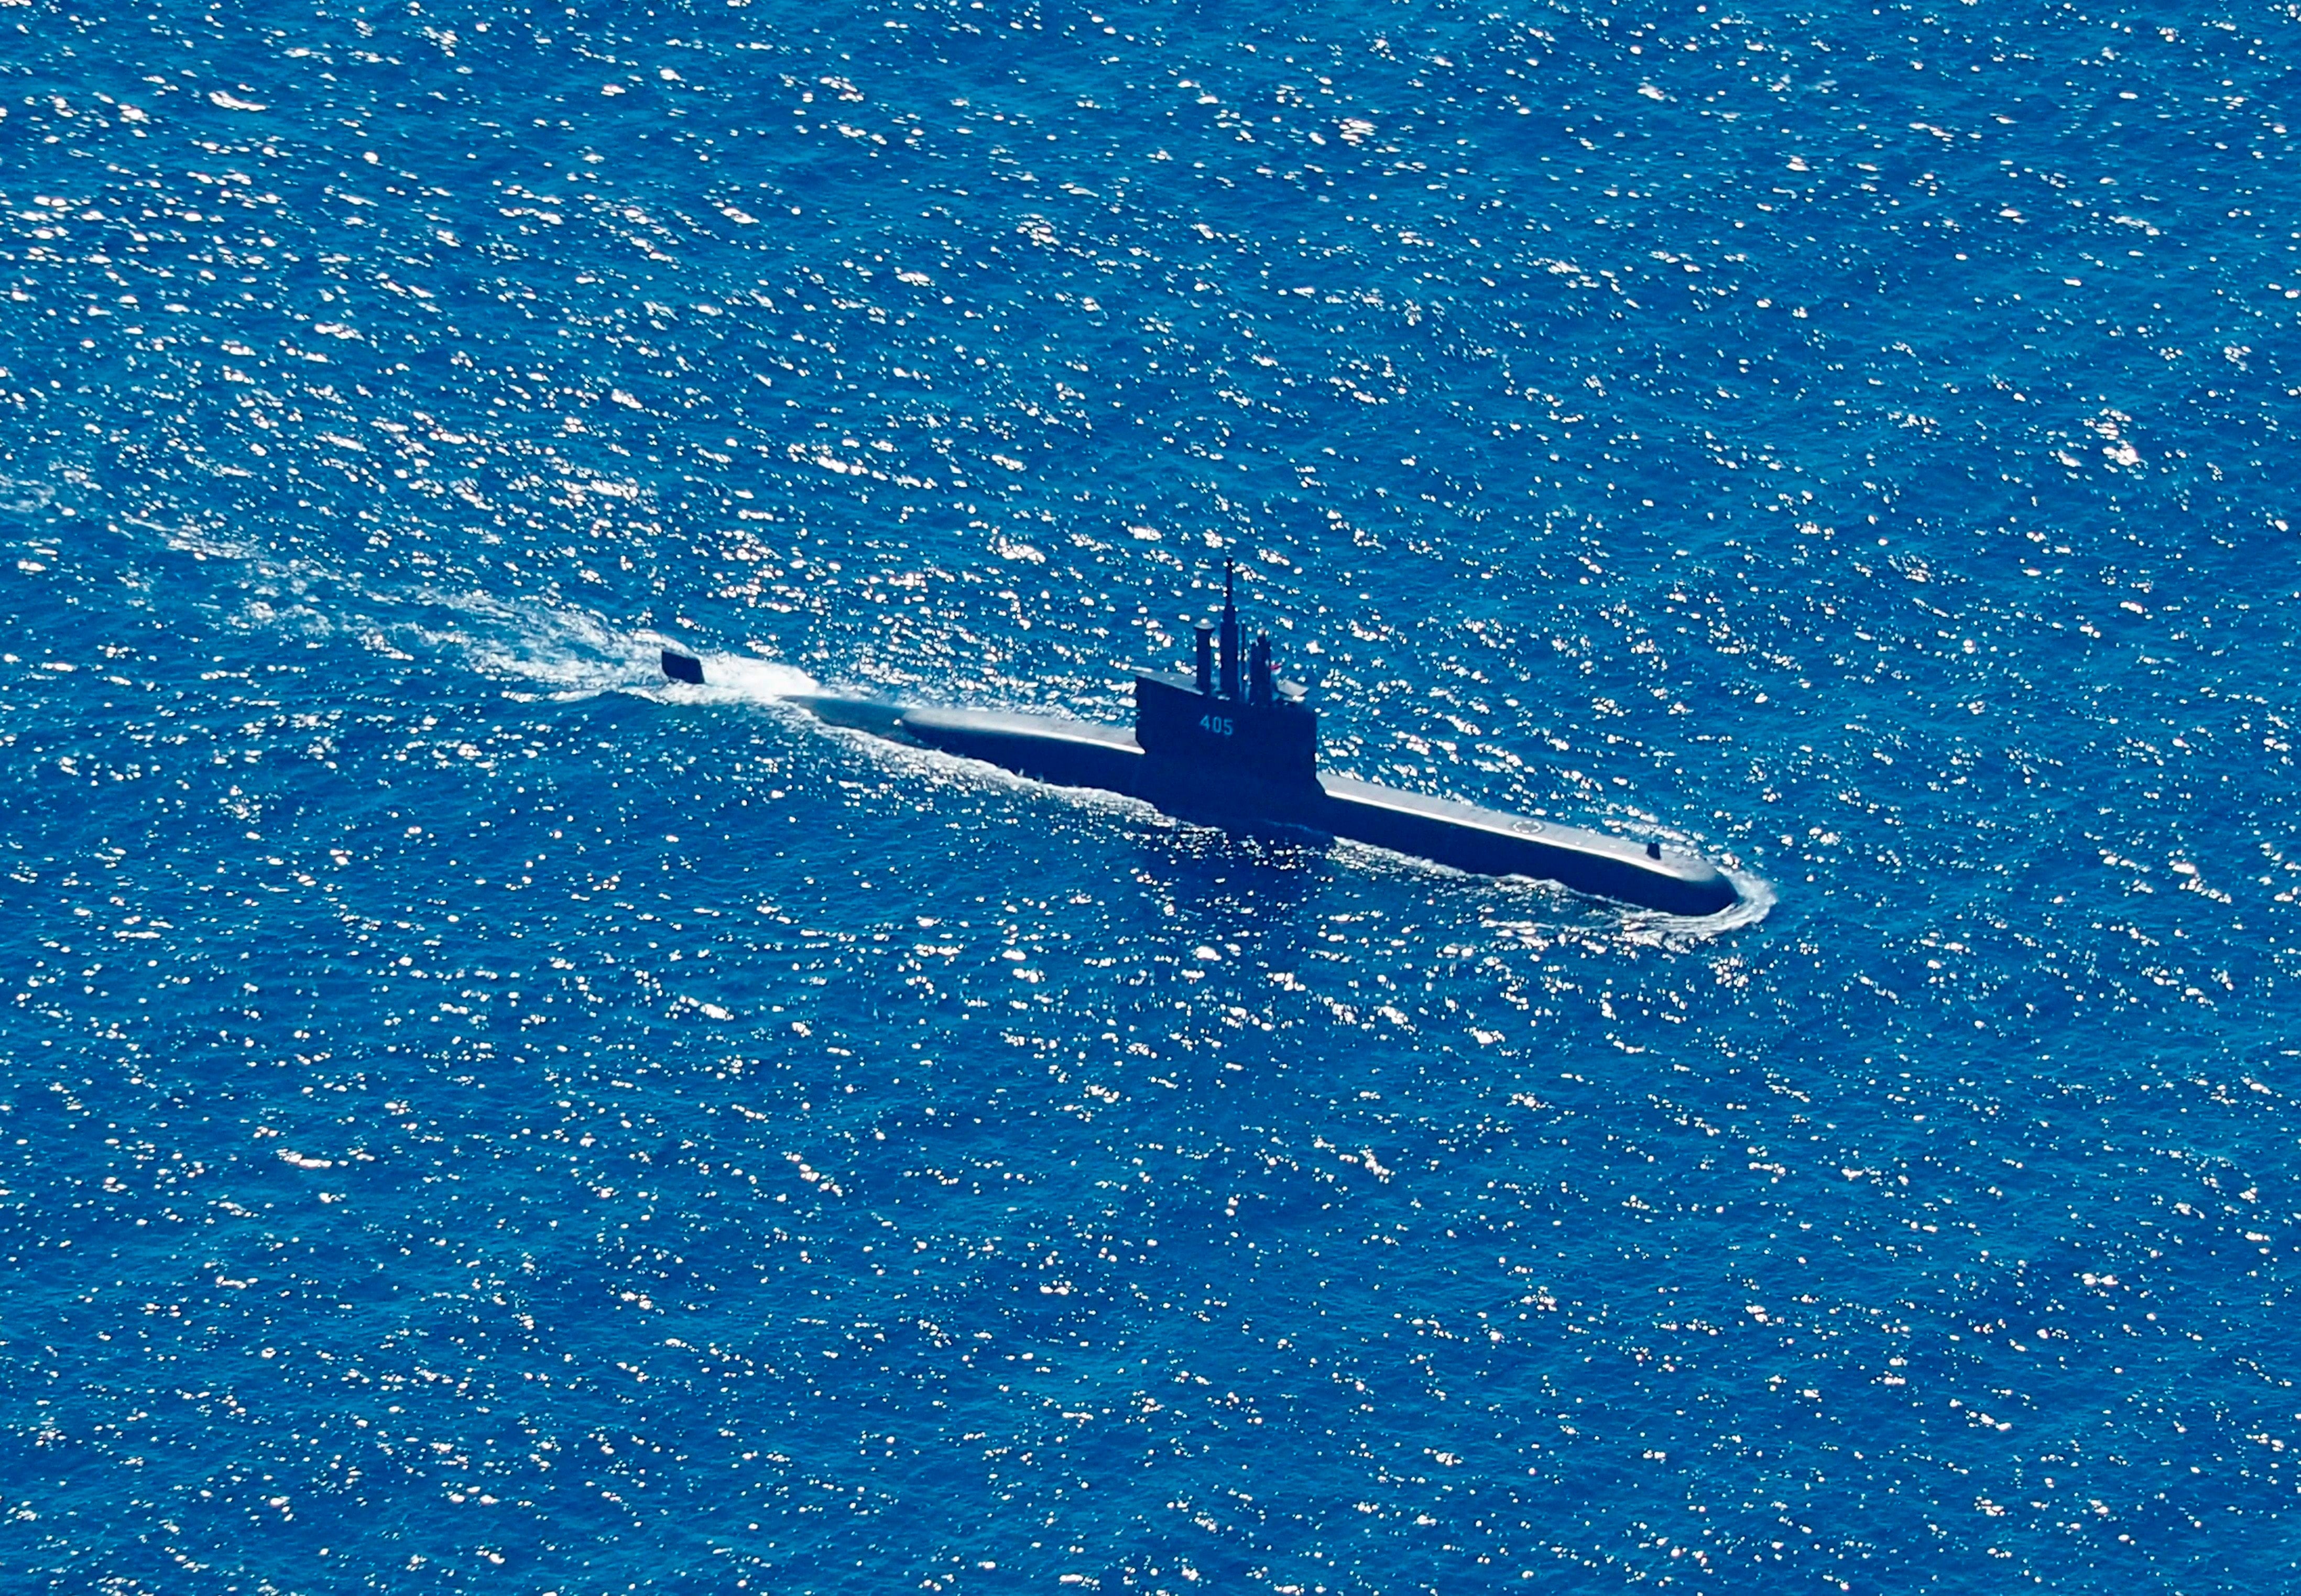 Foto aérea tomada desde un avión de patrulla marítima del 800 Escuadrón Aéreo de la 2a Ala Aérea del Centro de Aviación Naval (PUSPENERBAL), muestra al submarino de la Armada de Indonesia KRI Alugoro en misión de búsqueda del KRI Nanggala, un submarino de la Armada que desapareció durante una operación naval en las aguas de la isla de Bali, Indonesia, el 22 de abril de 2021. EFE / EPA / ERIC IRENG
